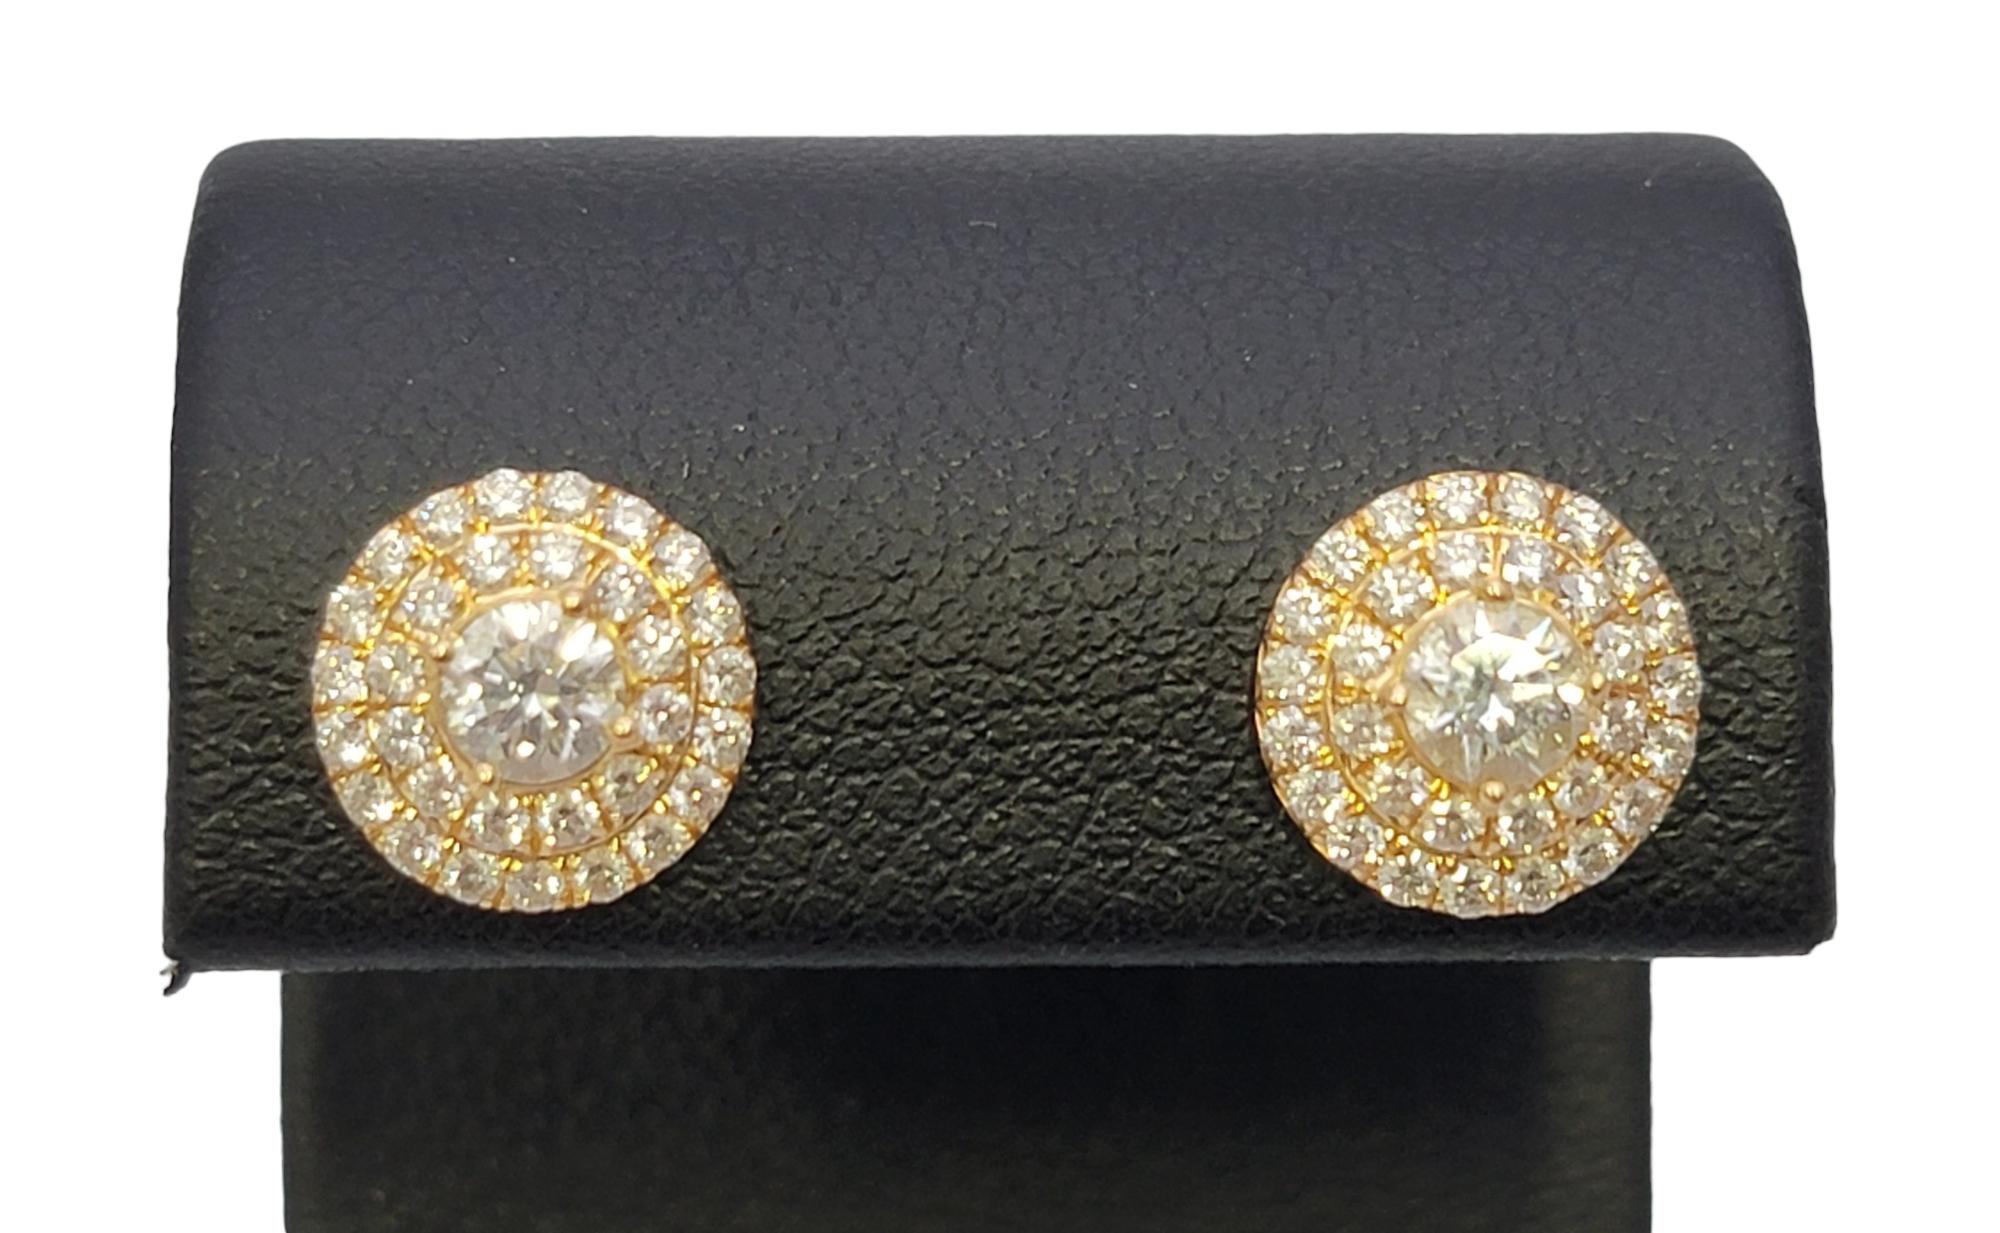 Tiffany & Co. Soleste Diamond Double Halo Stud Earrings in 18 Karat Yellow Gold  3